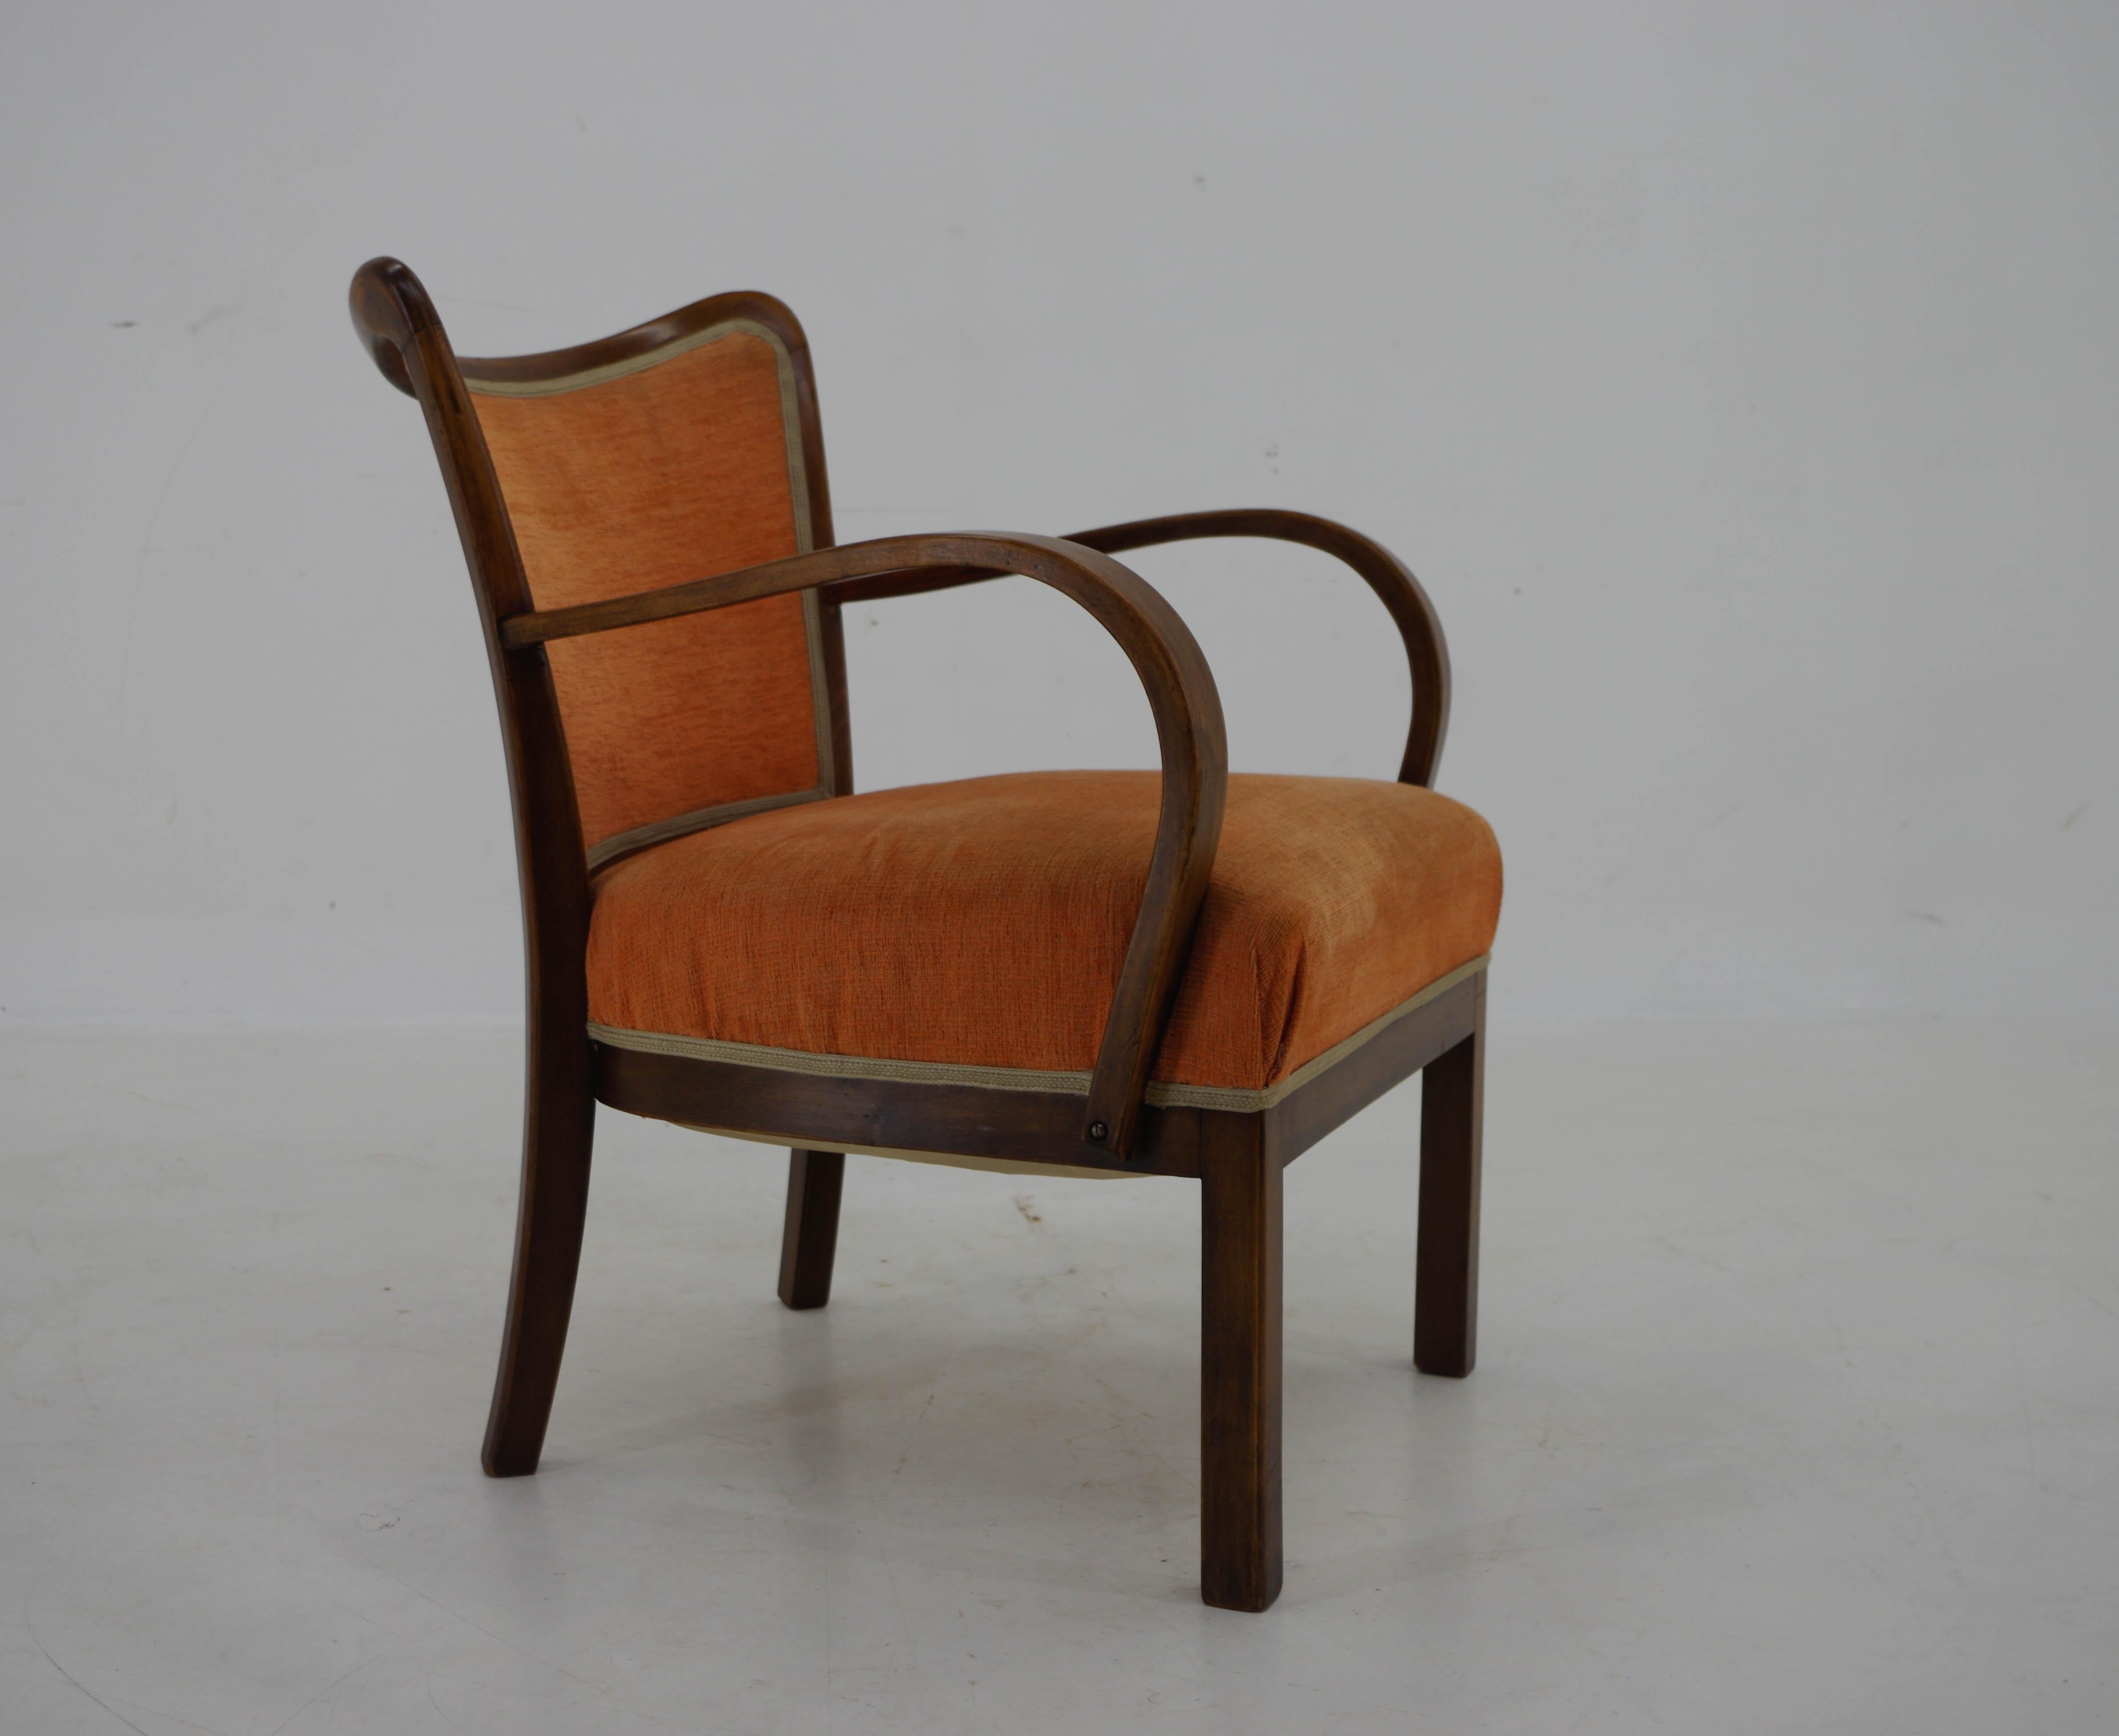 Elegant fauteuil Art Deco.
Très bon état d'origine.
Devis d'expédition sur demande